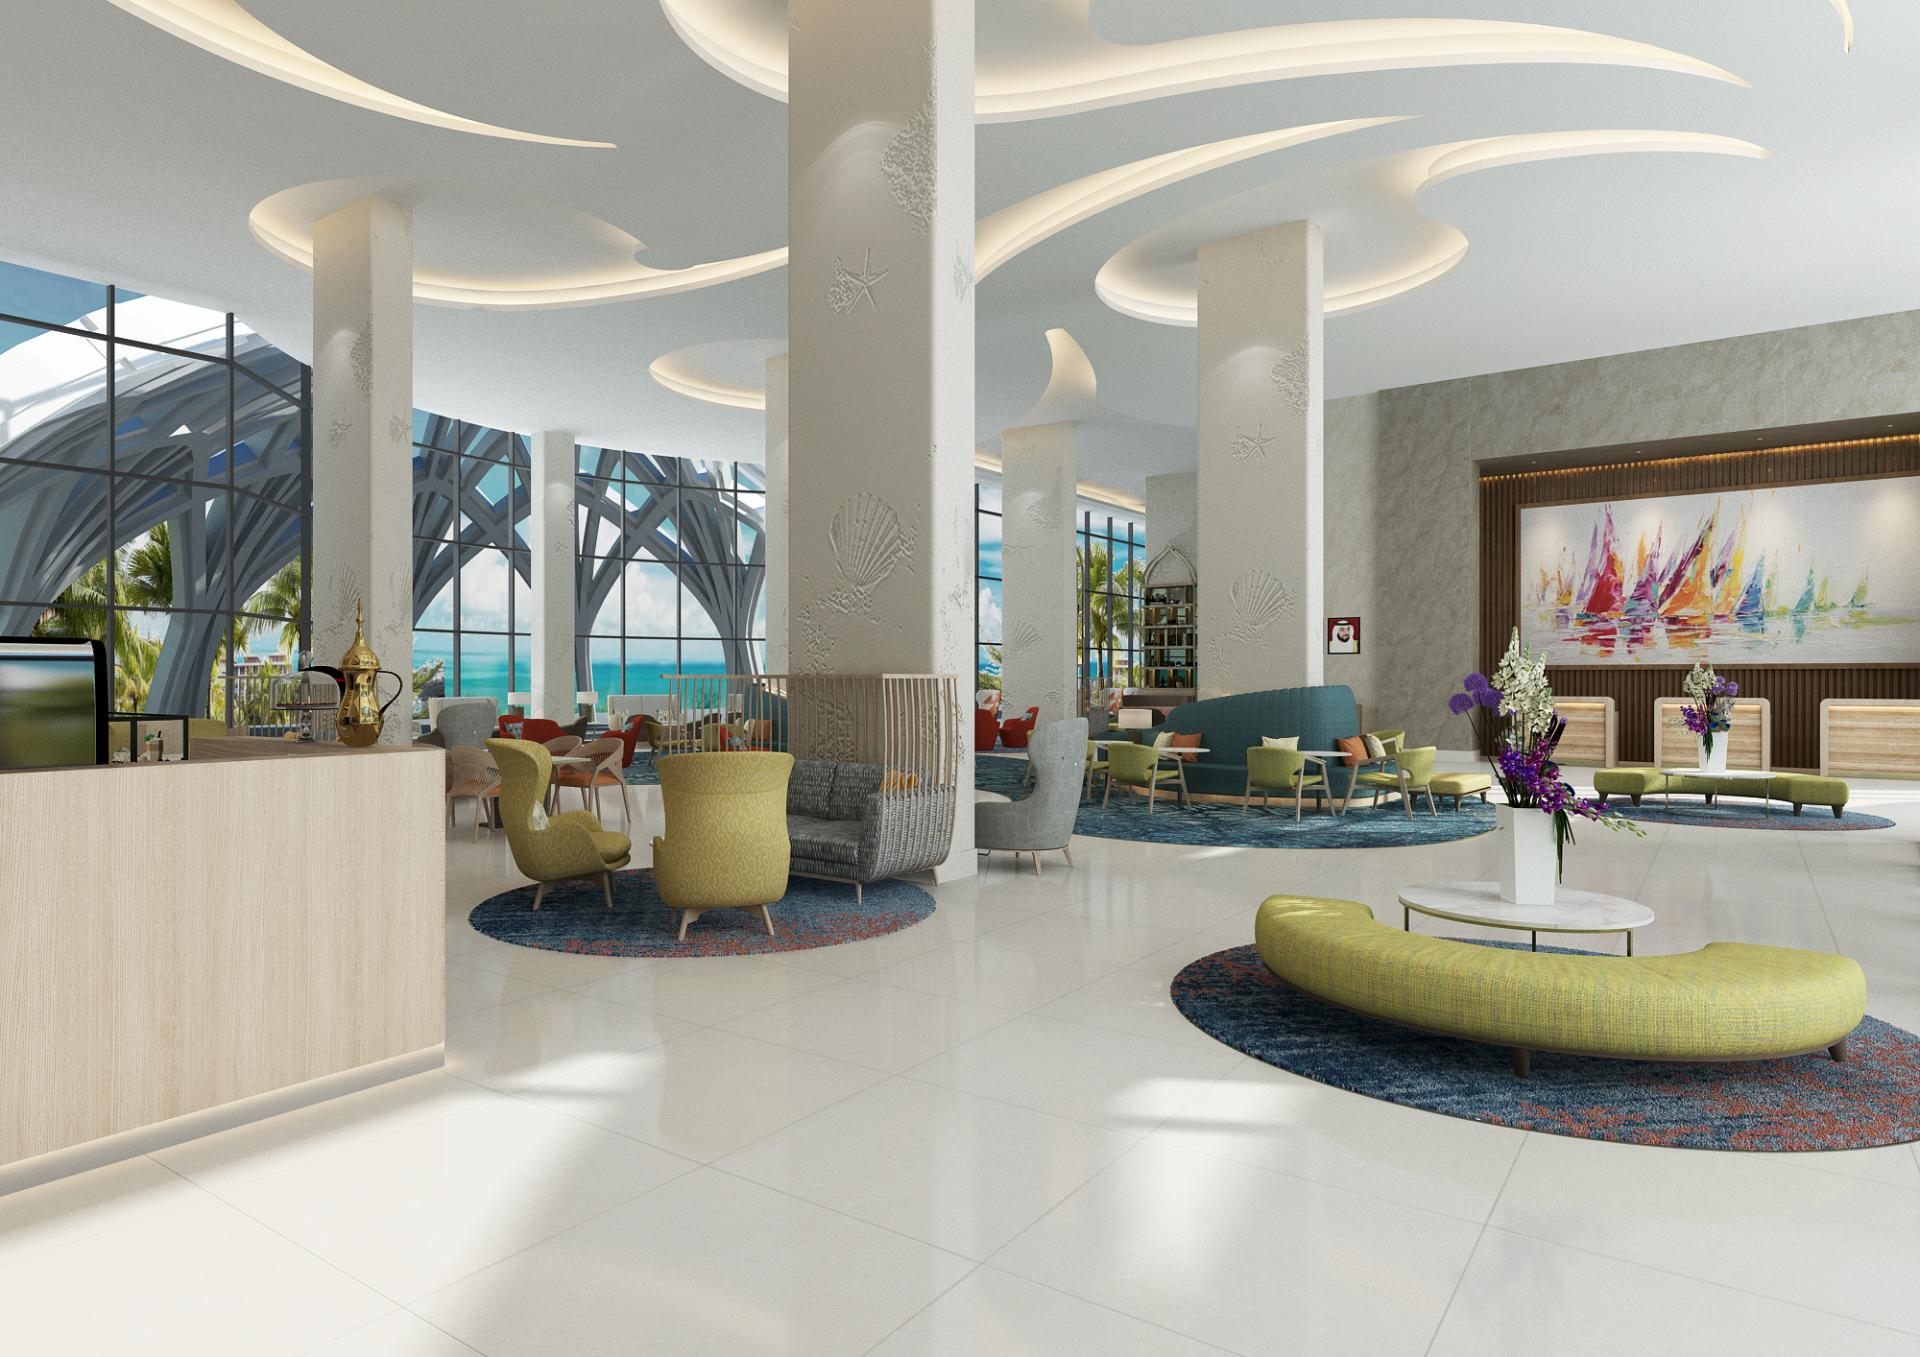 Centara Mirage Beach Resort Dubai. - Zjednoczone Emiraty Arabskie